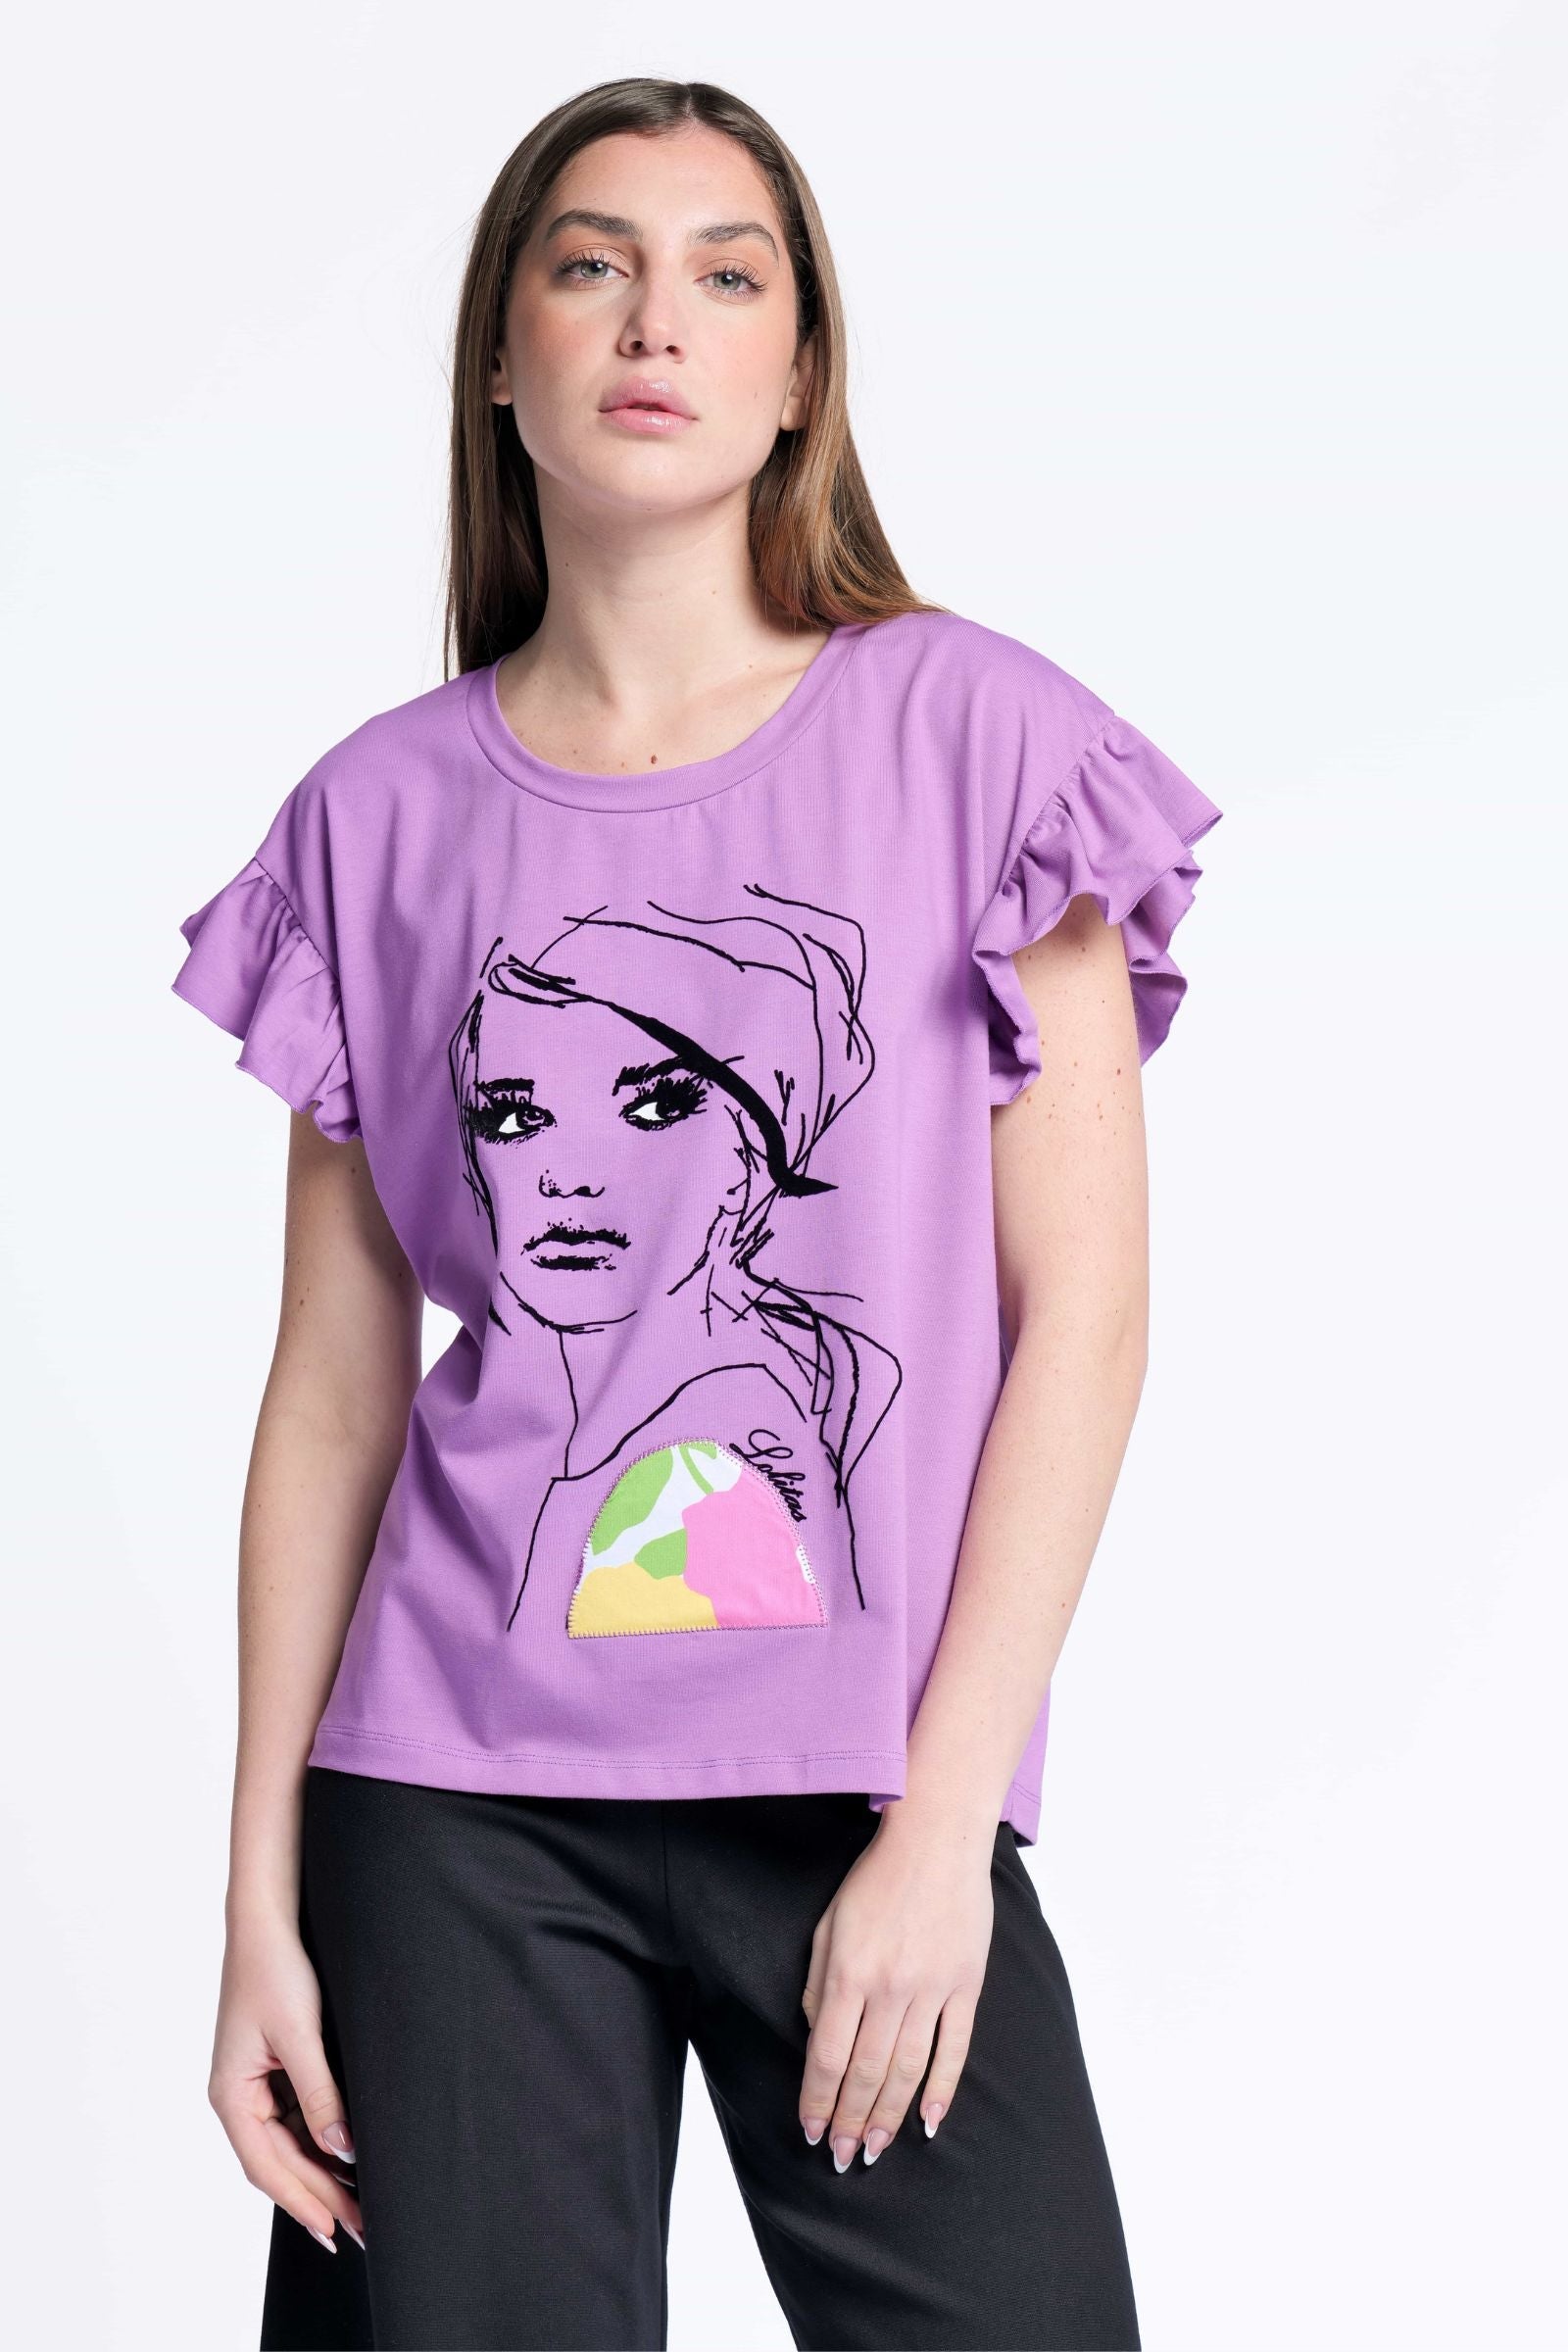 Camiseta malva algodon estampado cara Lolitas&L - lolitasyl.com